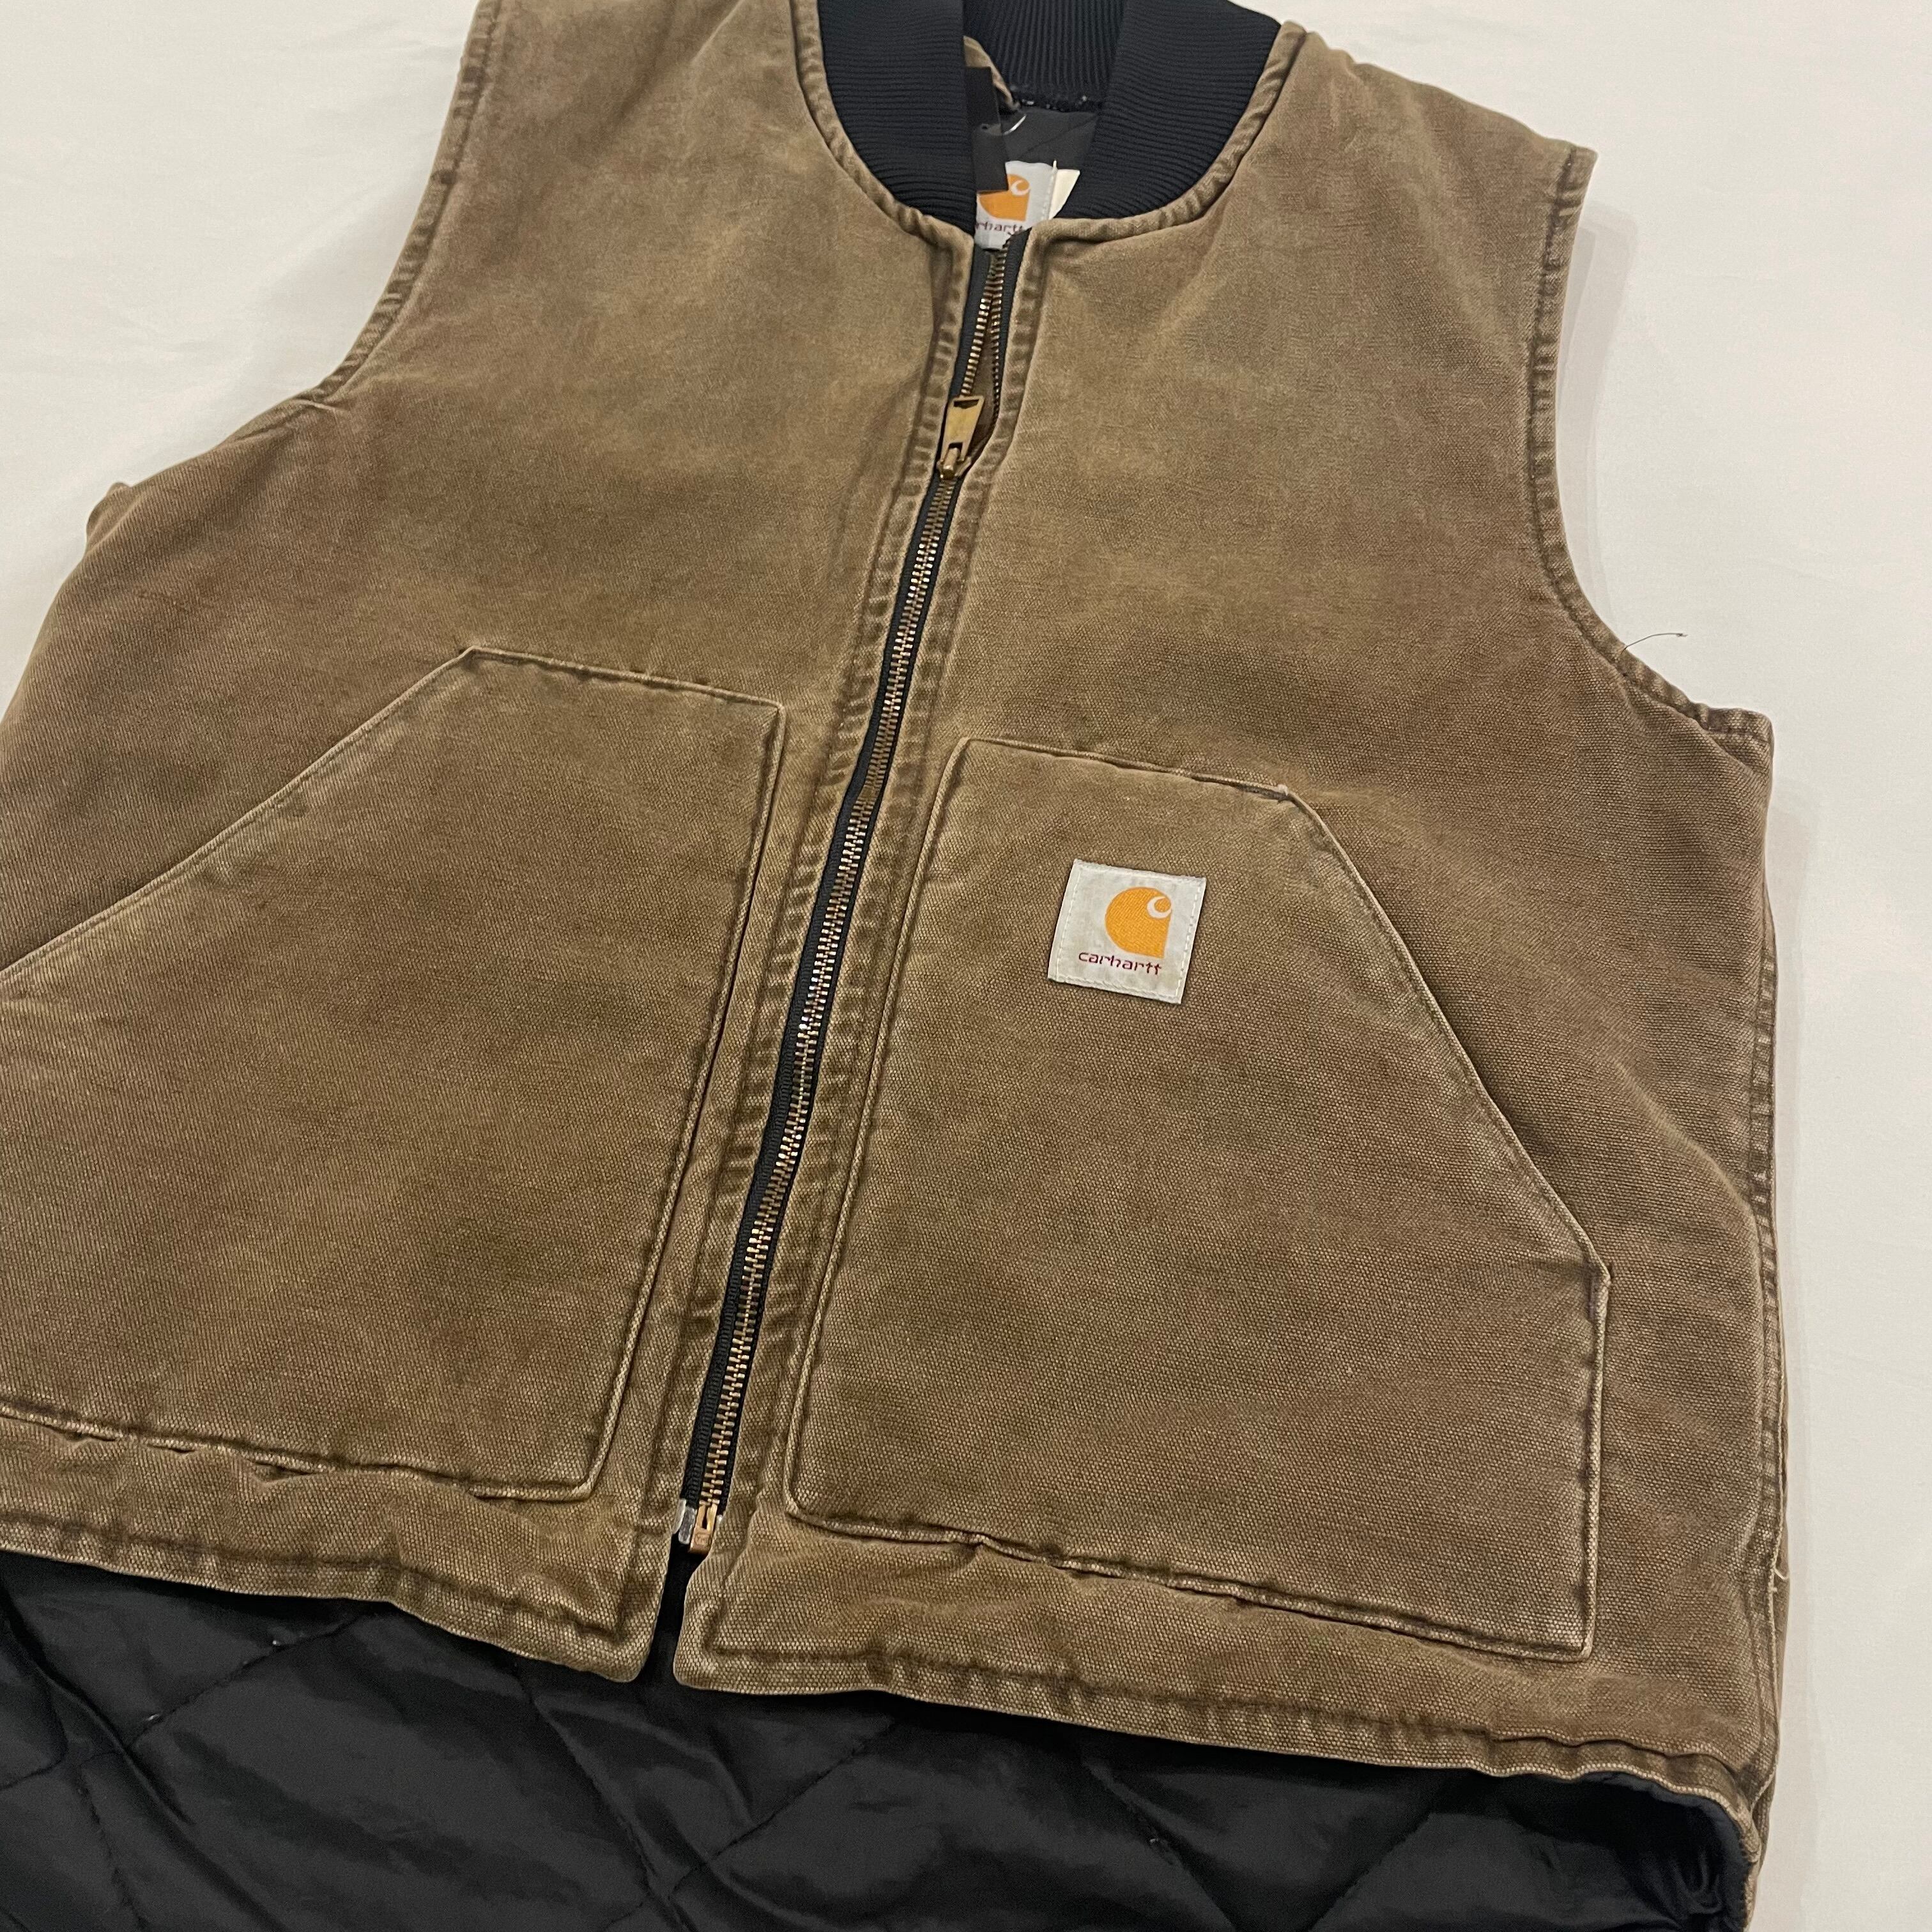 90's Carhartt vest